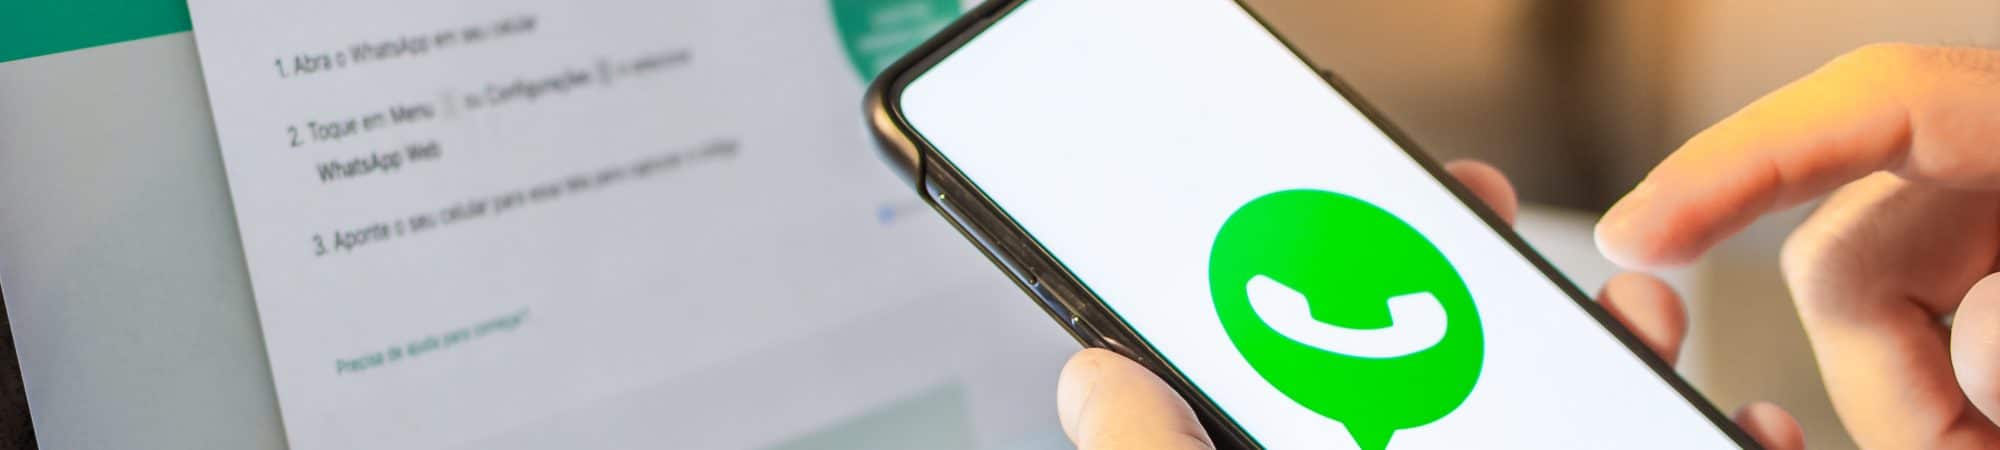 Imagem mostra uma mão segurando um smartphone com o logotipo do WhatsApp na tela; ao fundo há um computador, para demonstrar o uso do WhatsApp Web